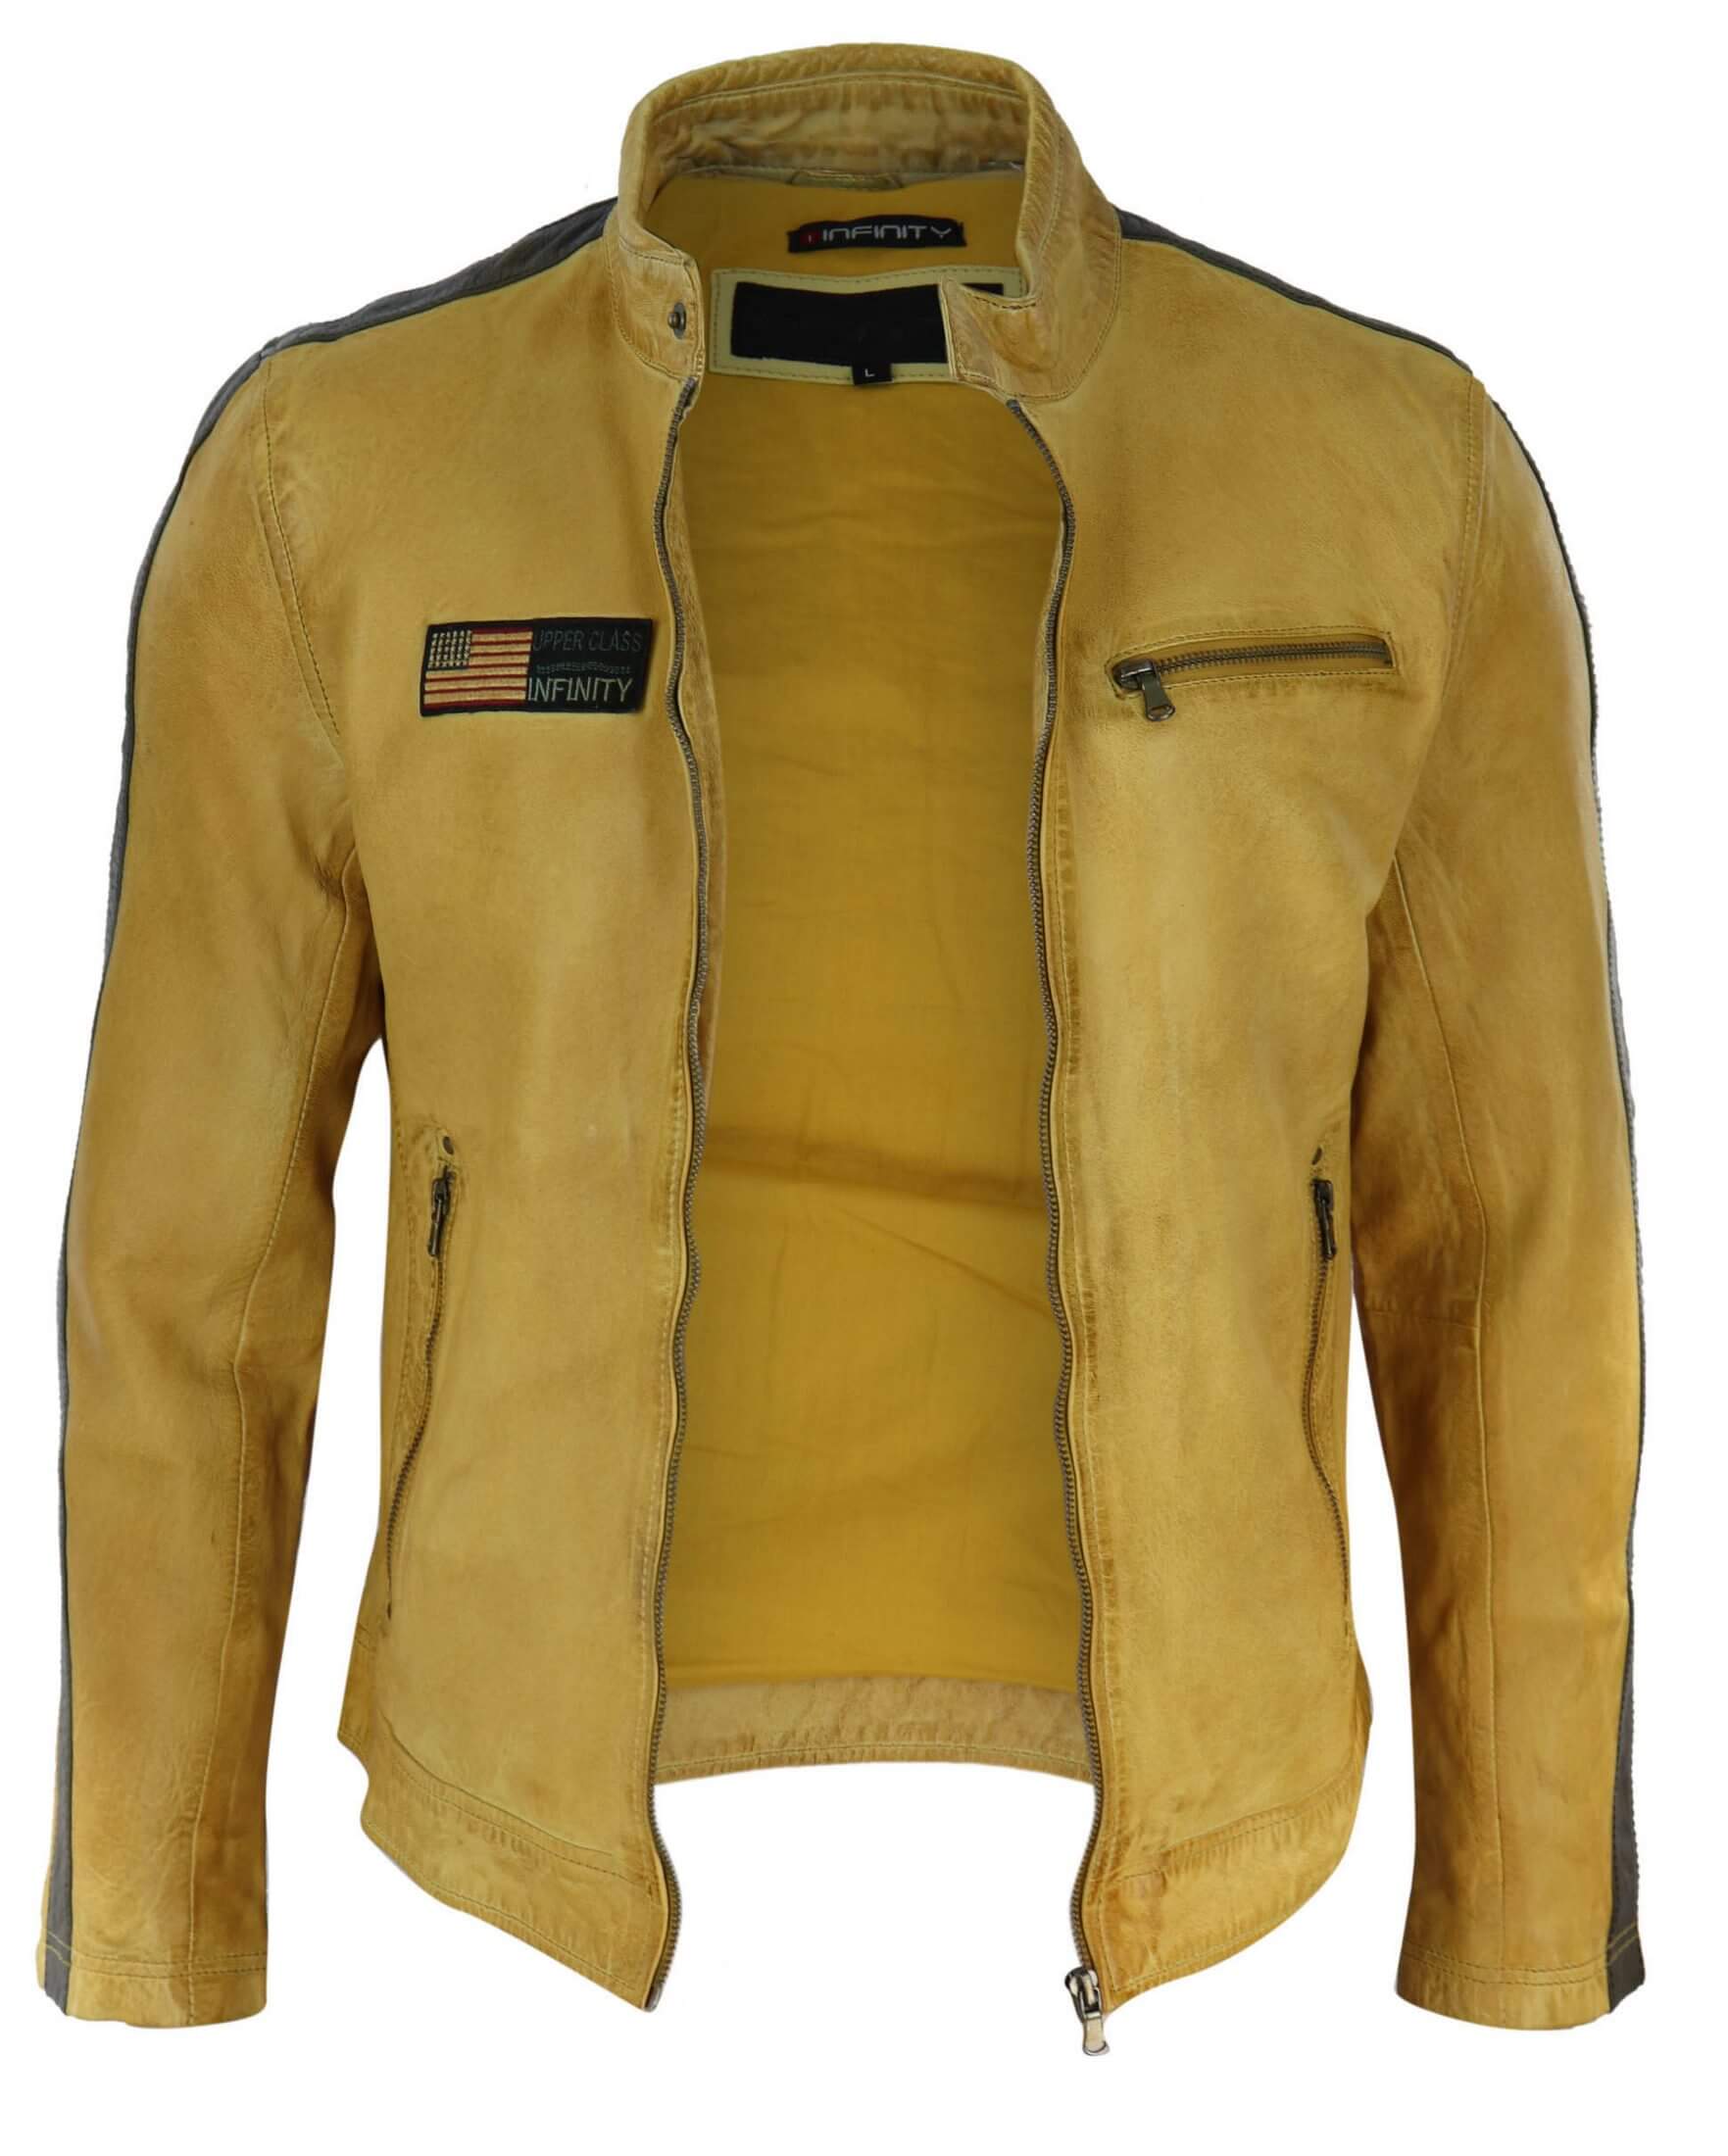 Real Leather Short Racing Mens Yellow Jacket: Buy Online - Happy Gentleman